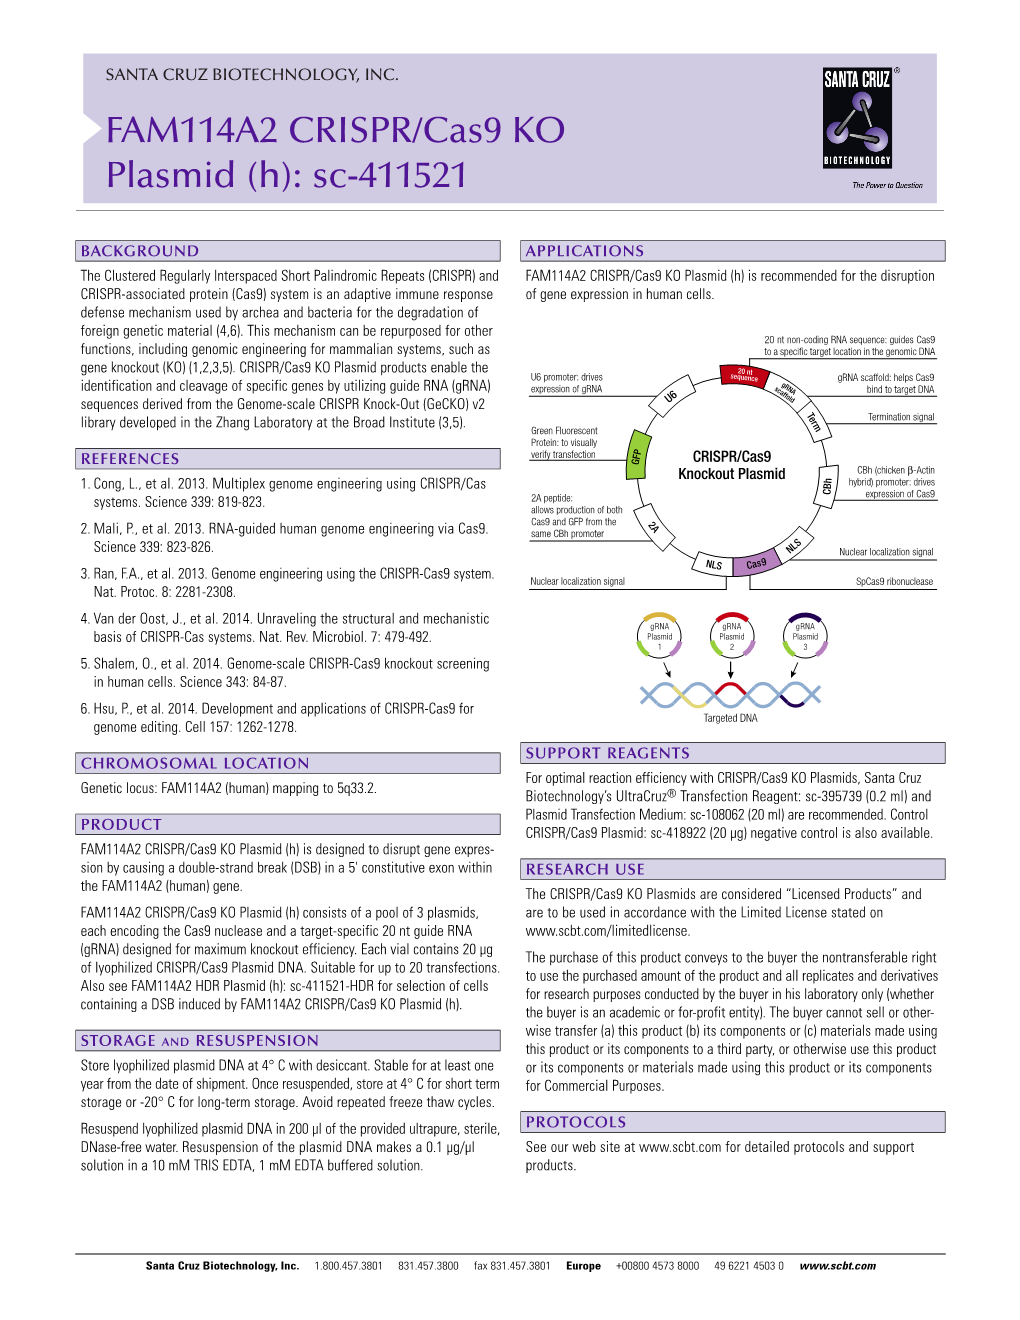 FAM114A2 CRISPR/Cas9 KO Plasmid (H): Sc-411521